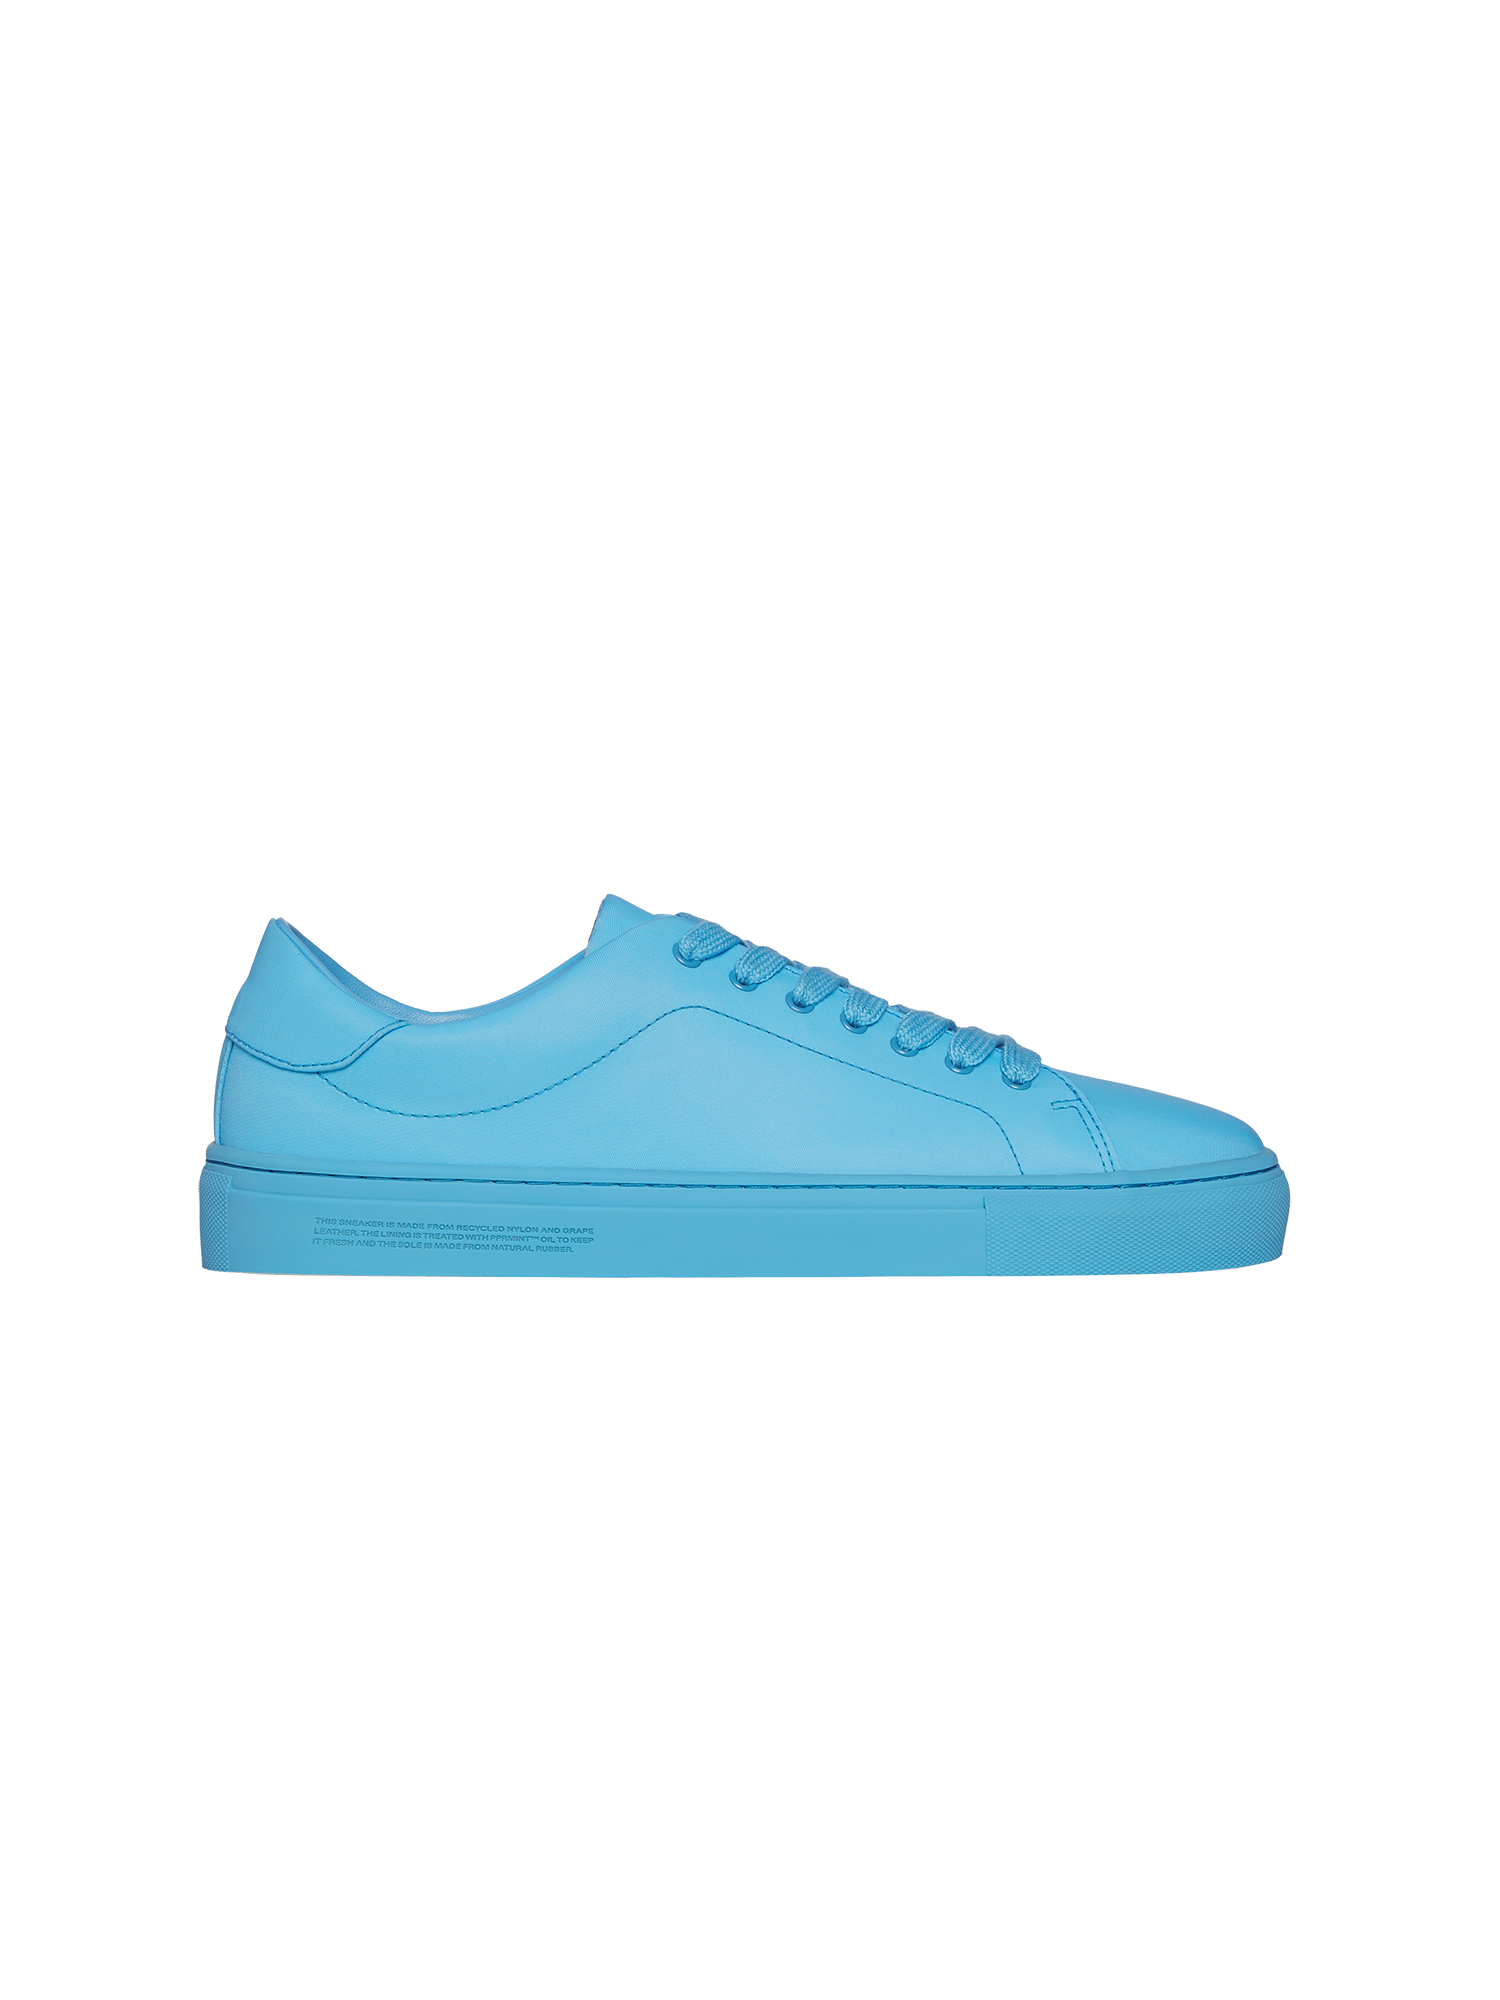 PANGAIA - Recycled Nylon Sneakers - beach blue EU37